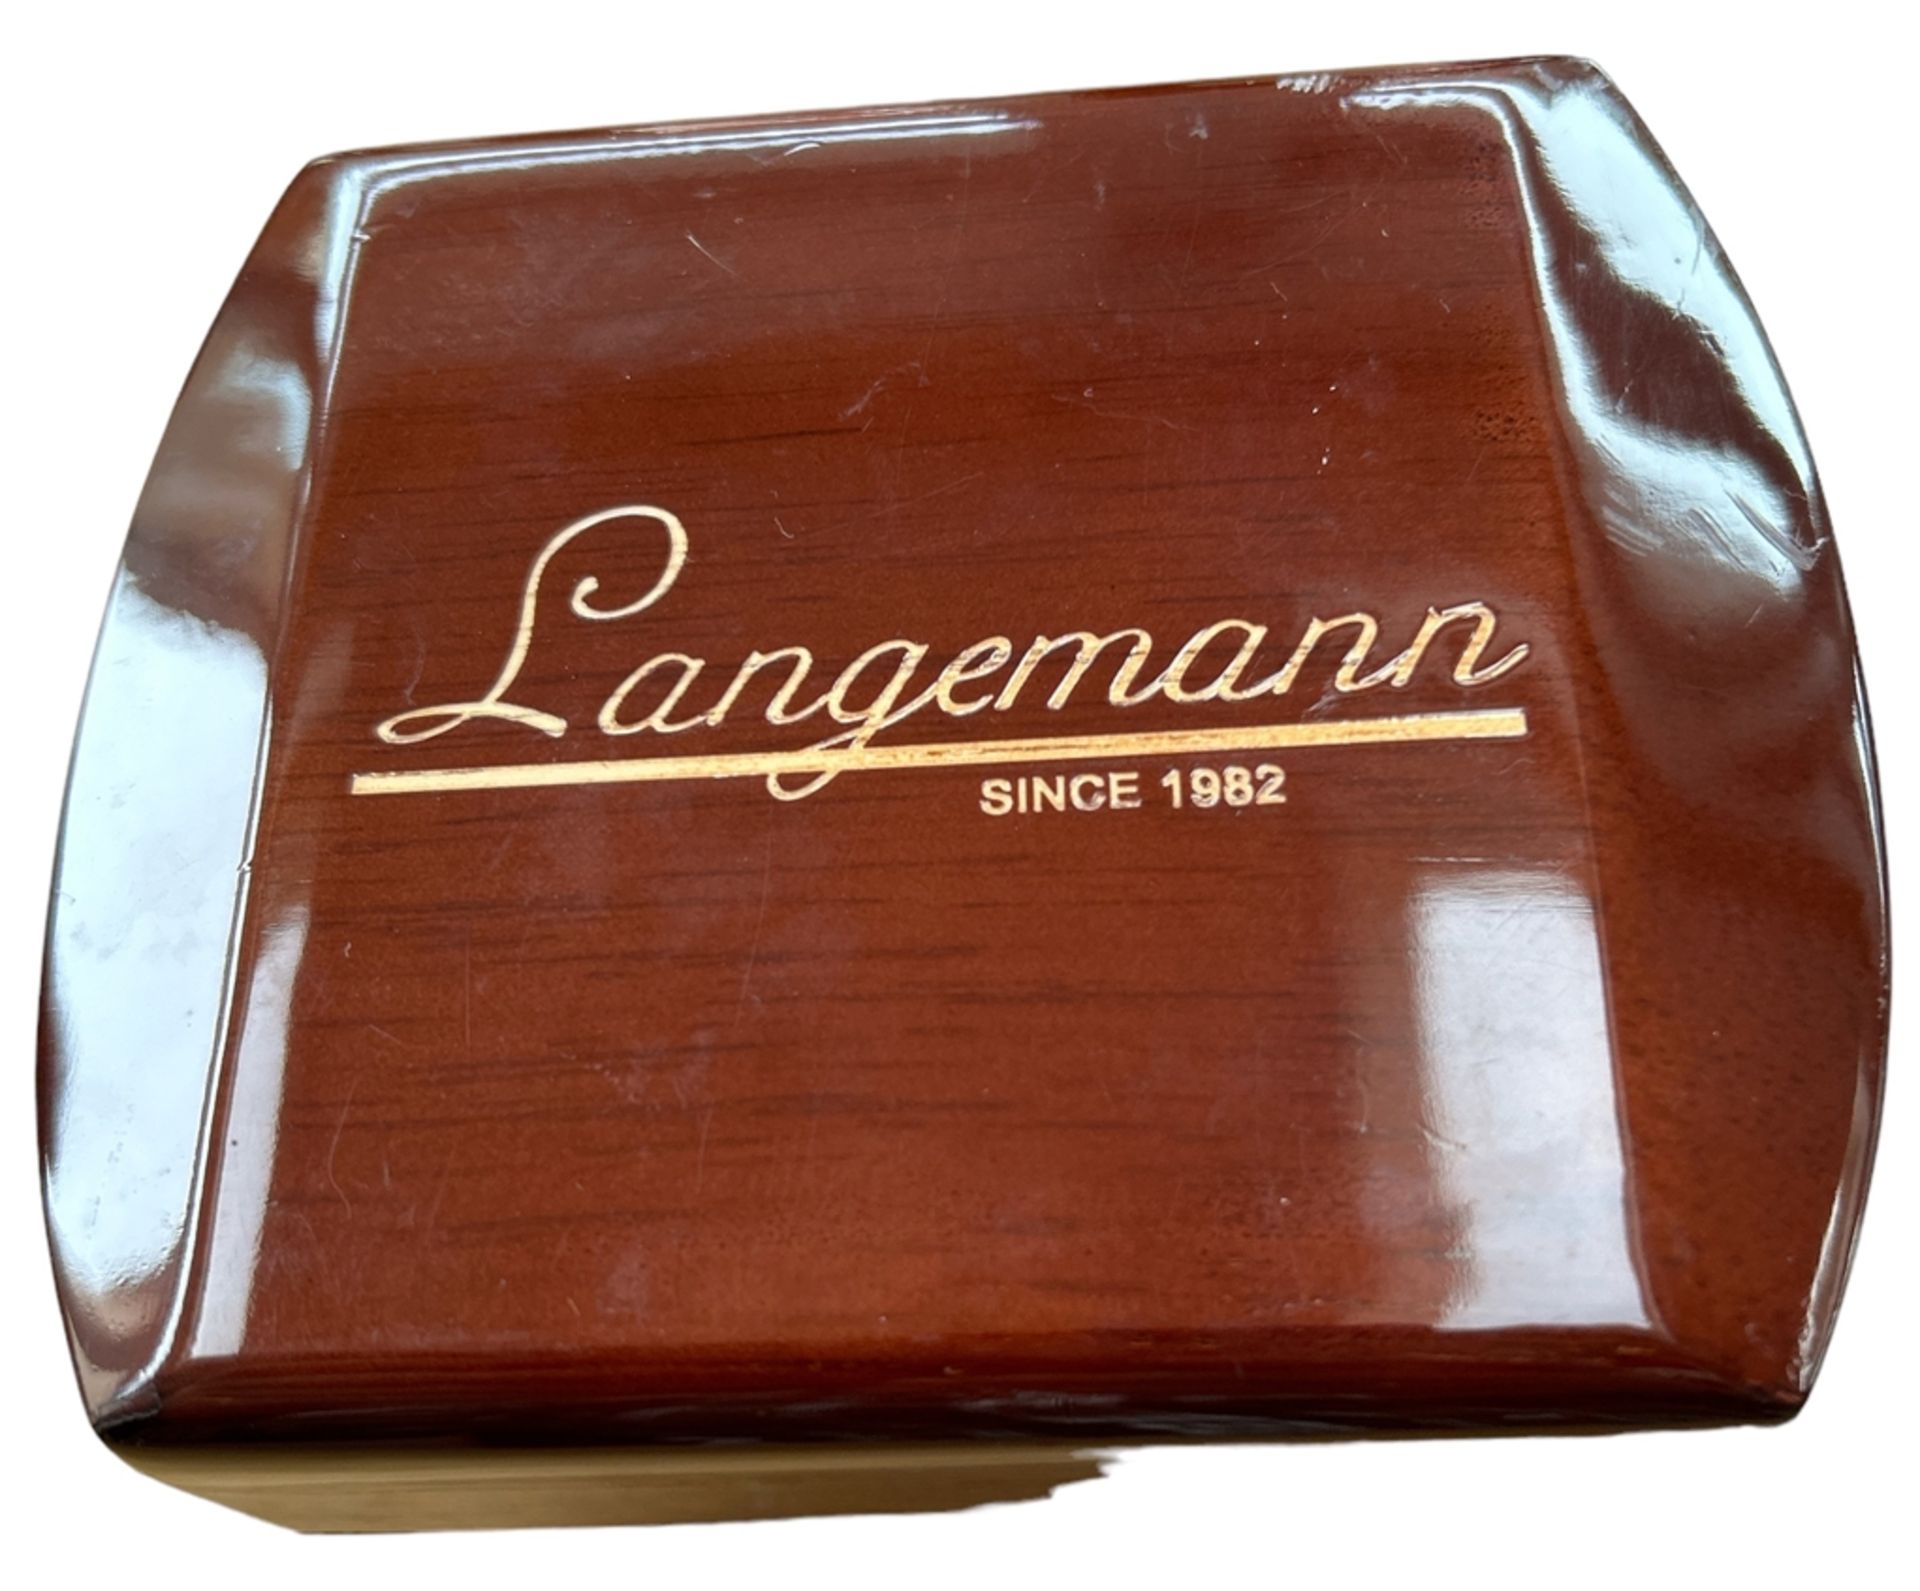 Langemann Autonatic Herrenarmbanduhr, neuwertig in Holzkasten, Werk läuft, mit Garantiekarte - Bild 3 aus 4